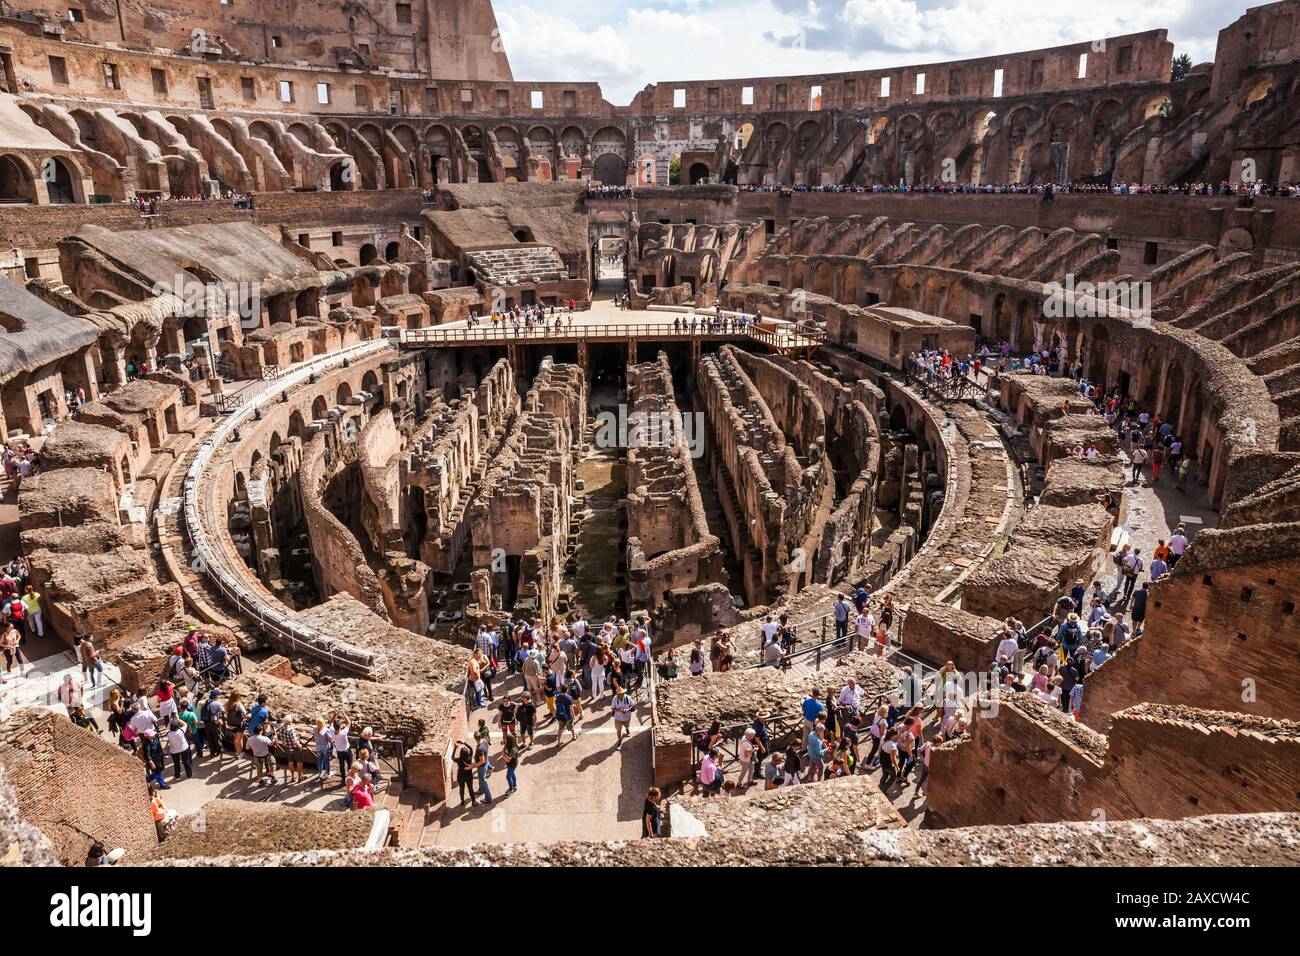 Vue panoramique sur l'intérieur du Colisée de Rome, en Italie, où les touristes se promènent. Banque D'Images